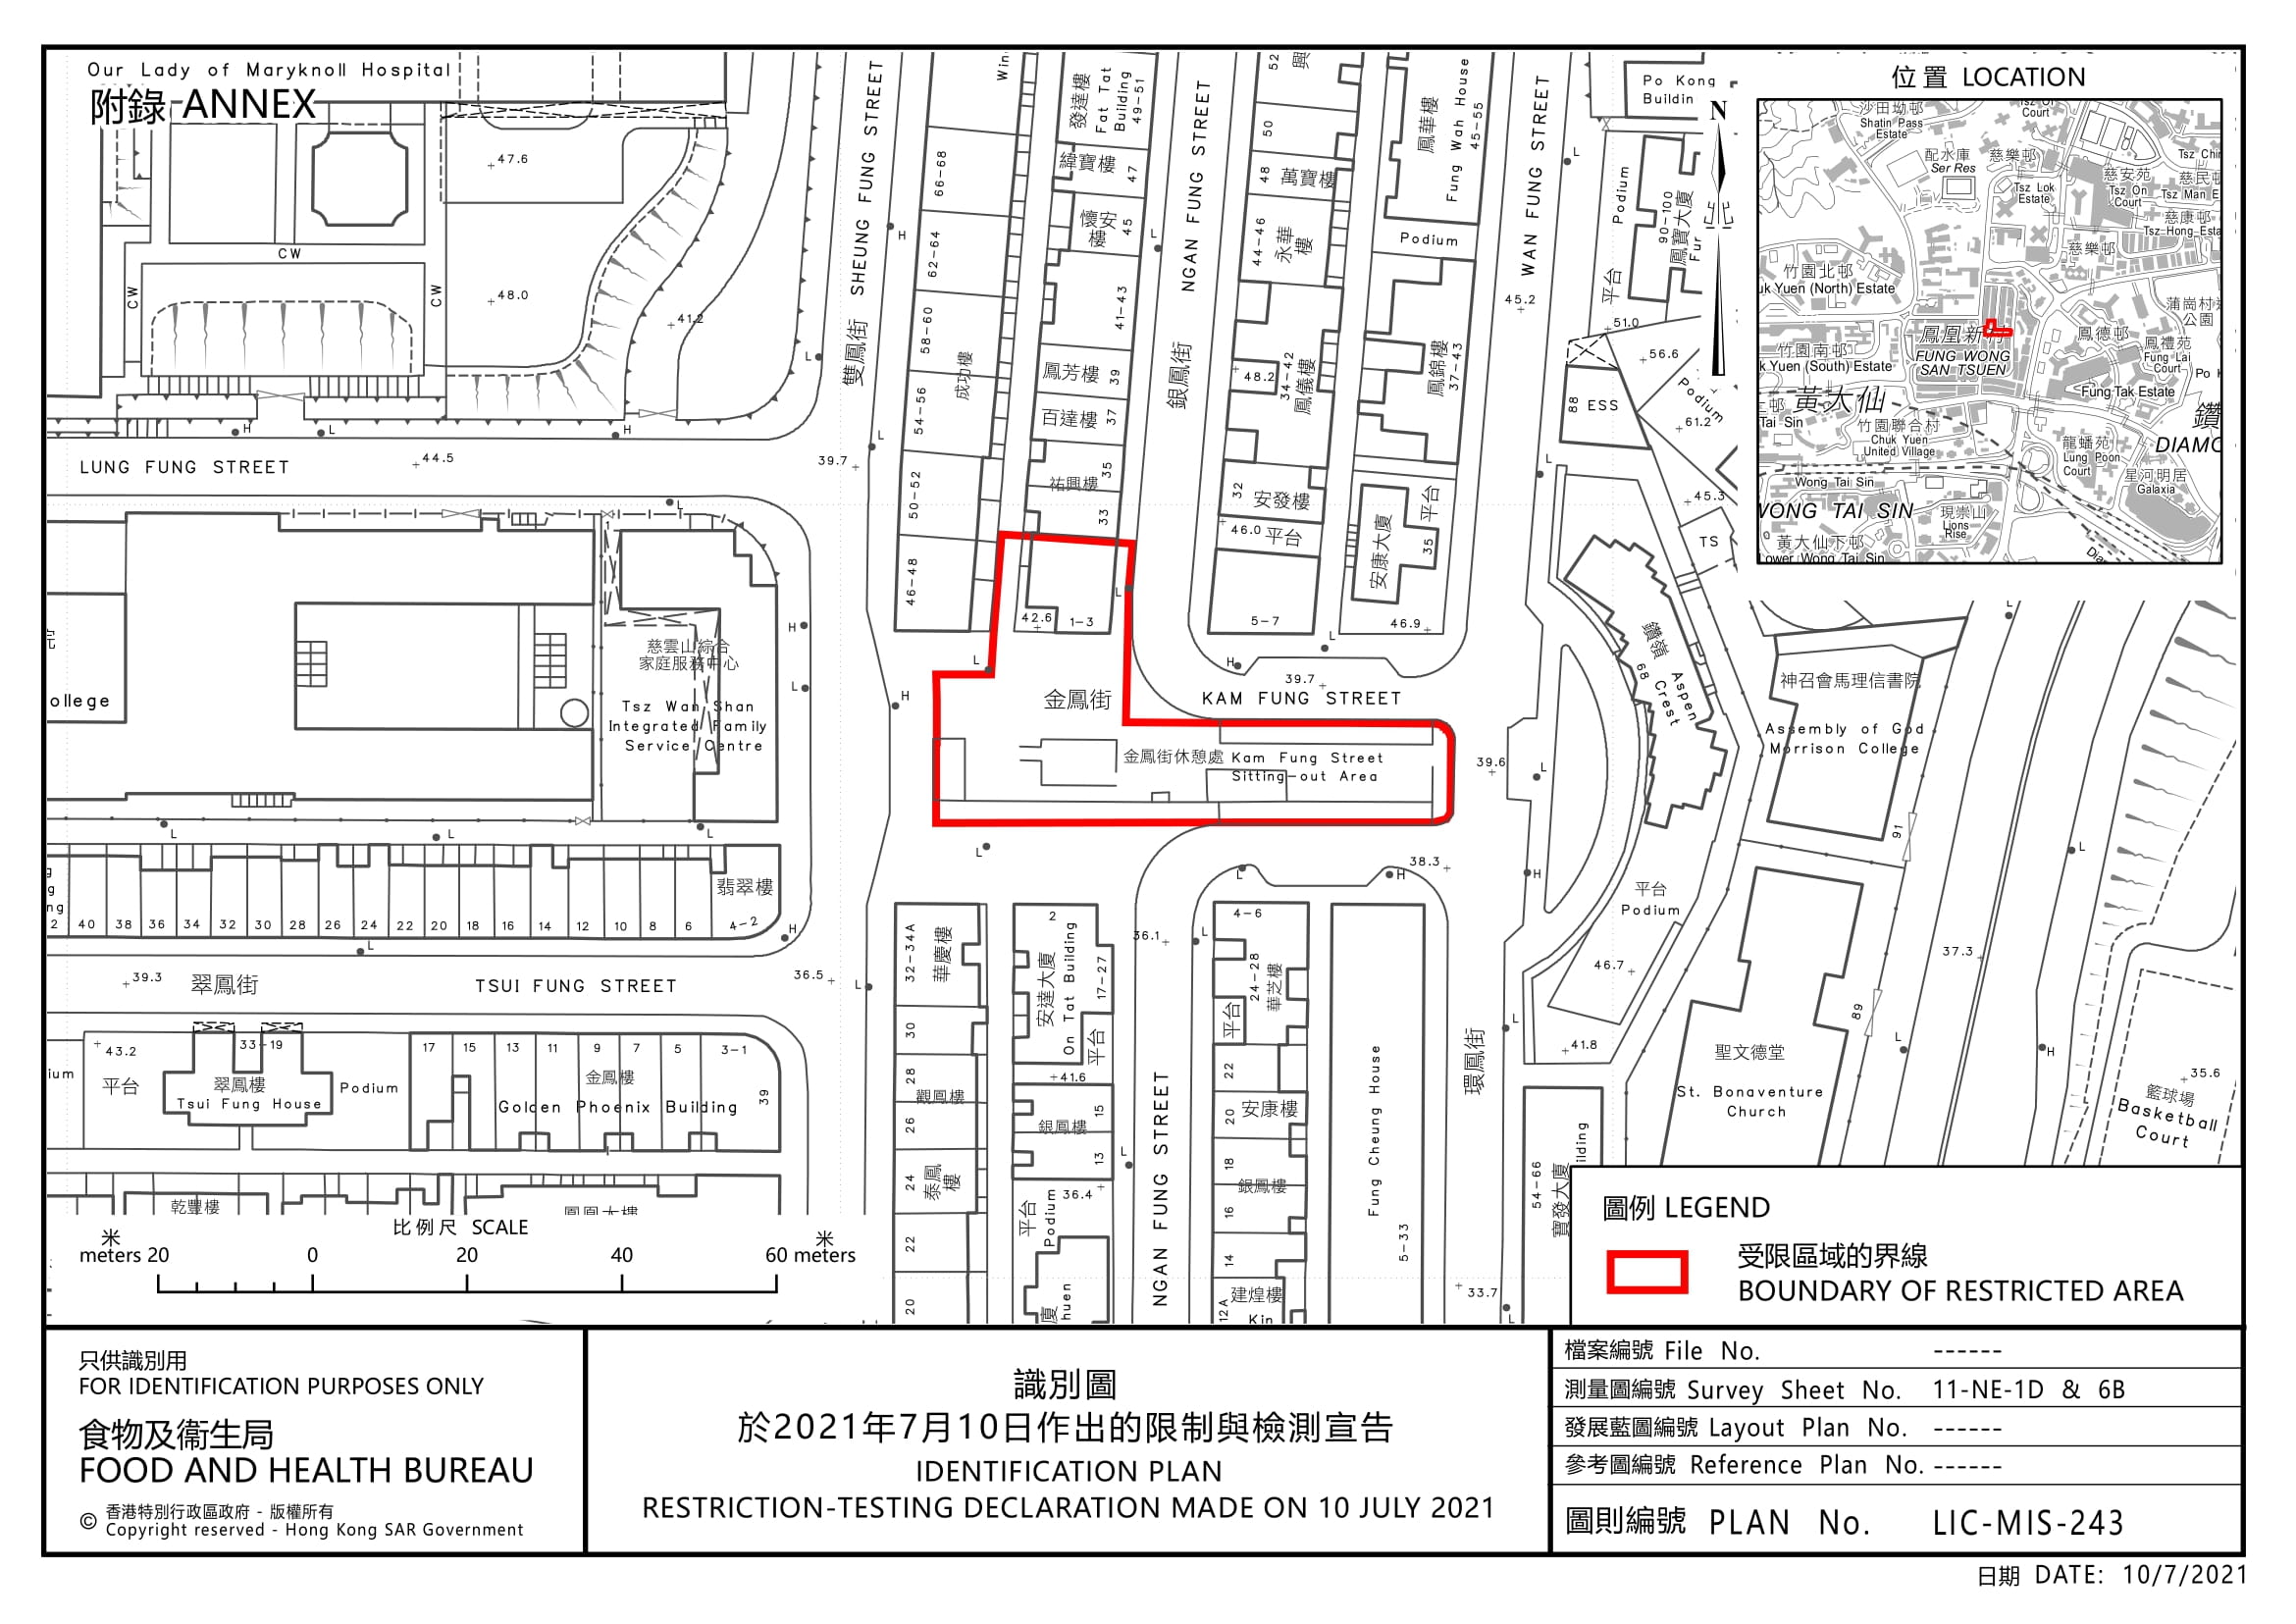 黃大仙金鳳街1至3號列受限區域須強檢 料明早7時完成